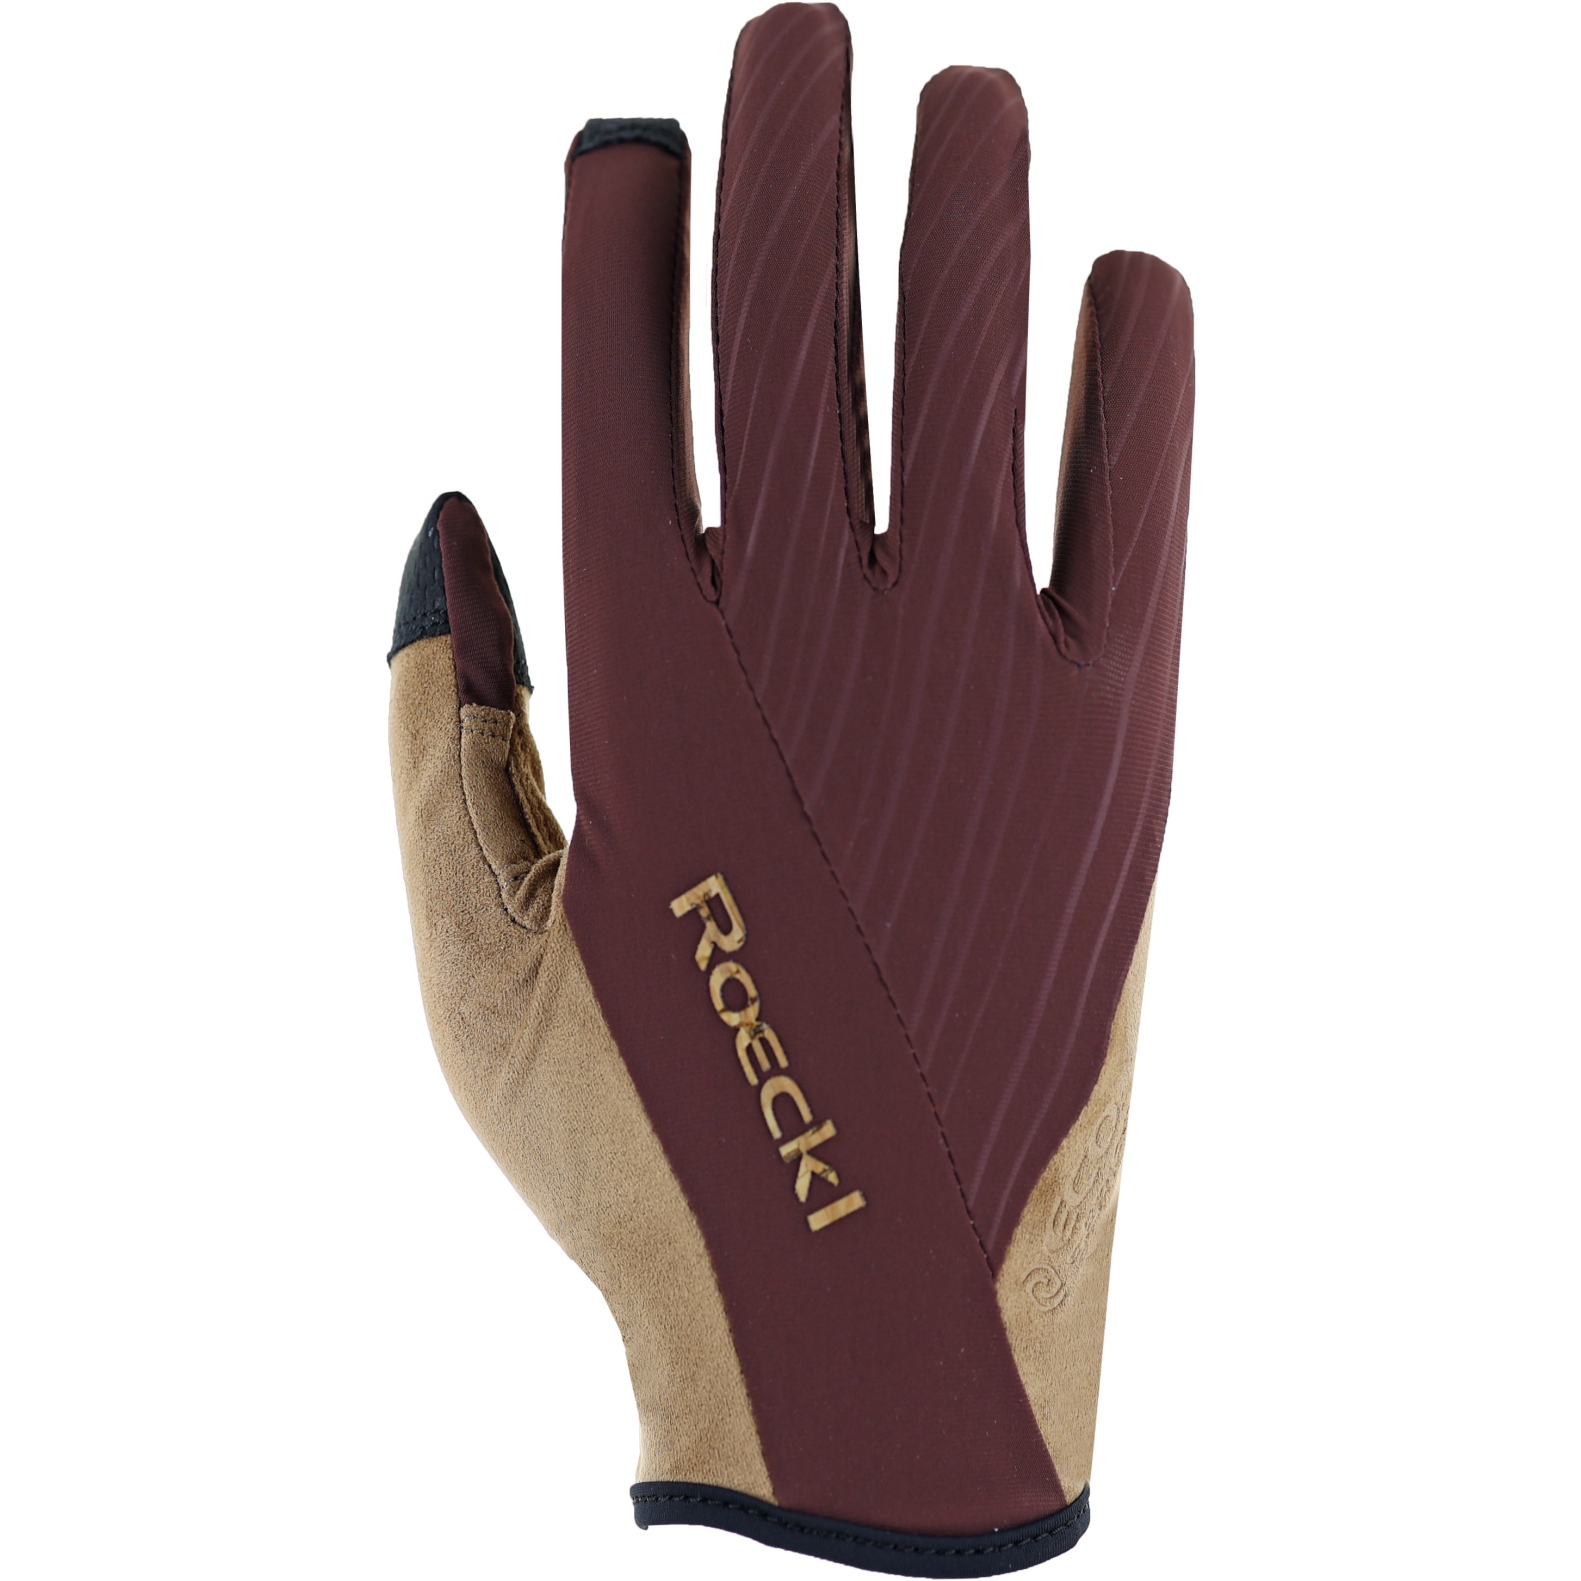 Productfoto van Roeckl Sports Malvedo Fietshandschoenen - mahogany 7700